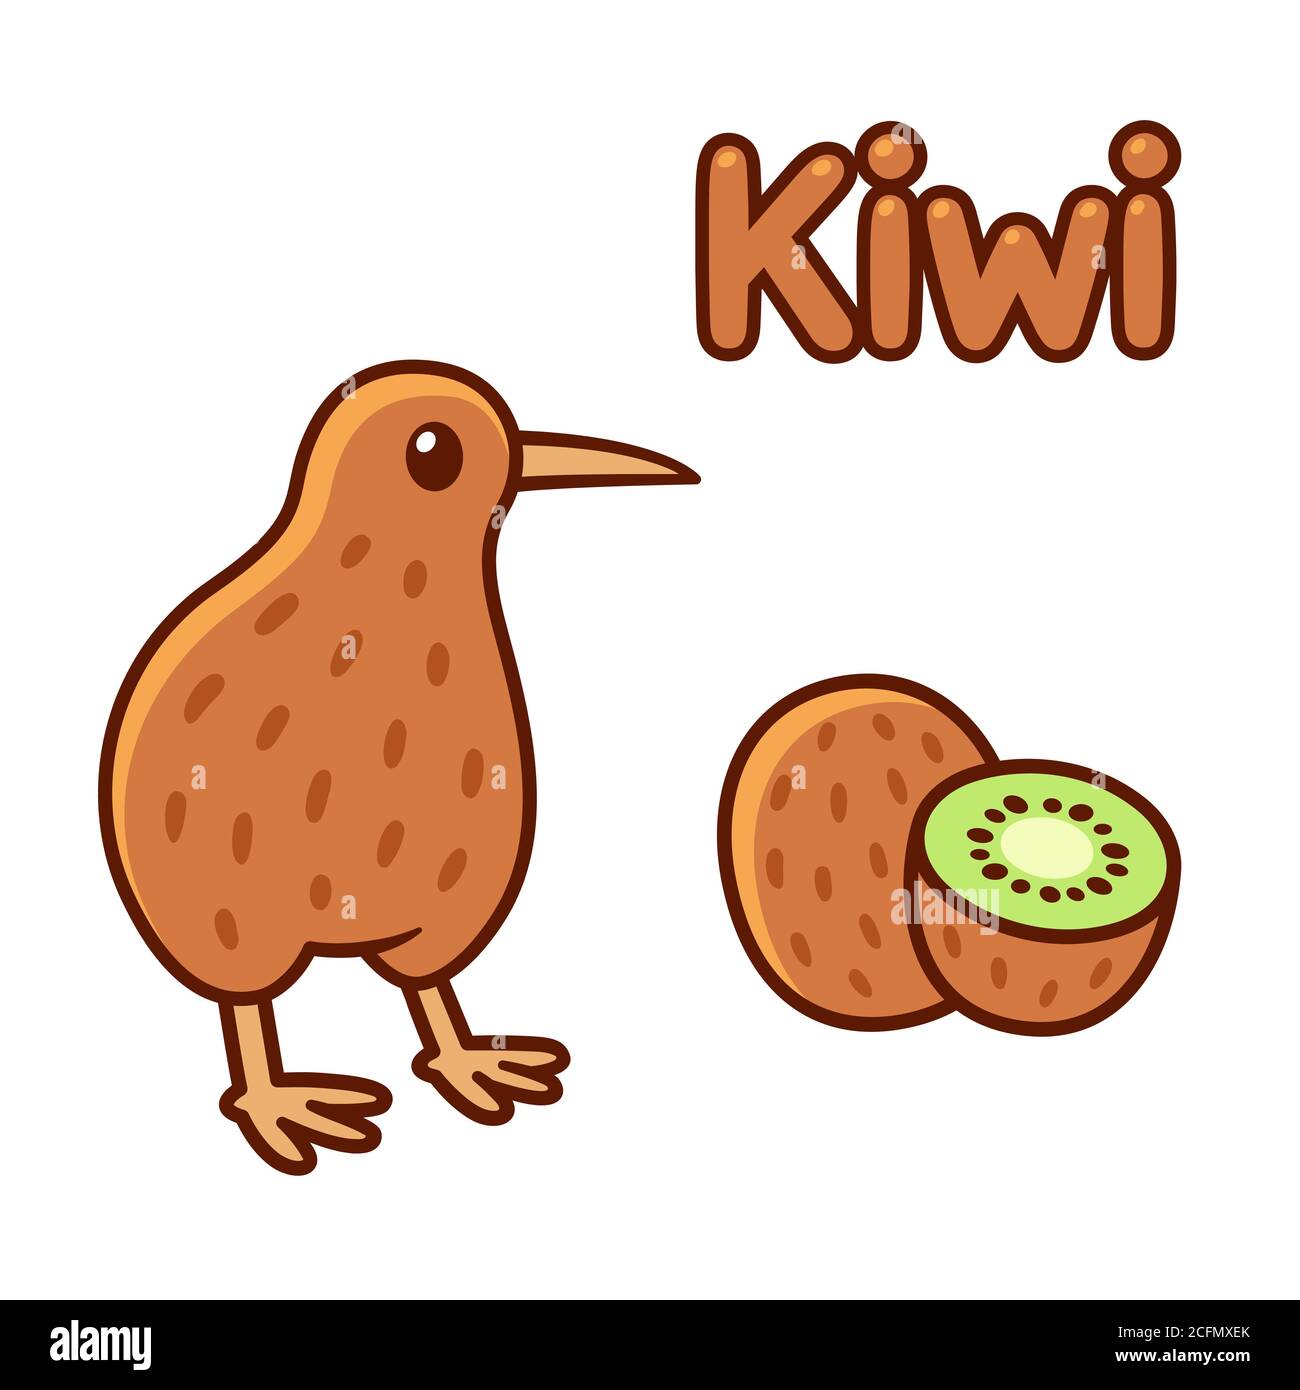 Niedlichen Cartoon Kiwi Vogel und Obst Zeichnung. Isolierte Vektor-Clip Art-Illustration. Stock Vektor